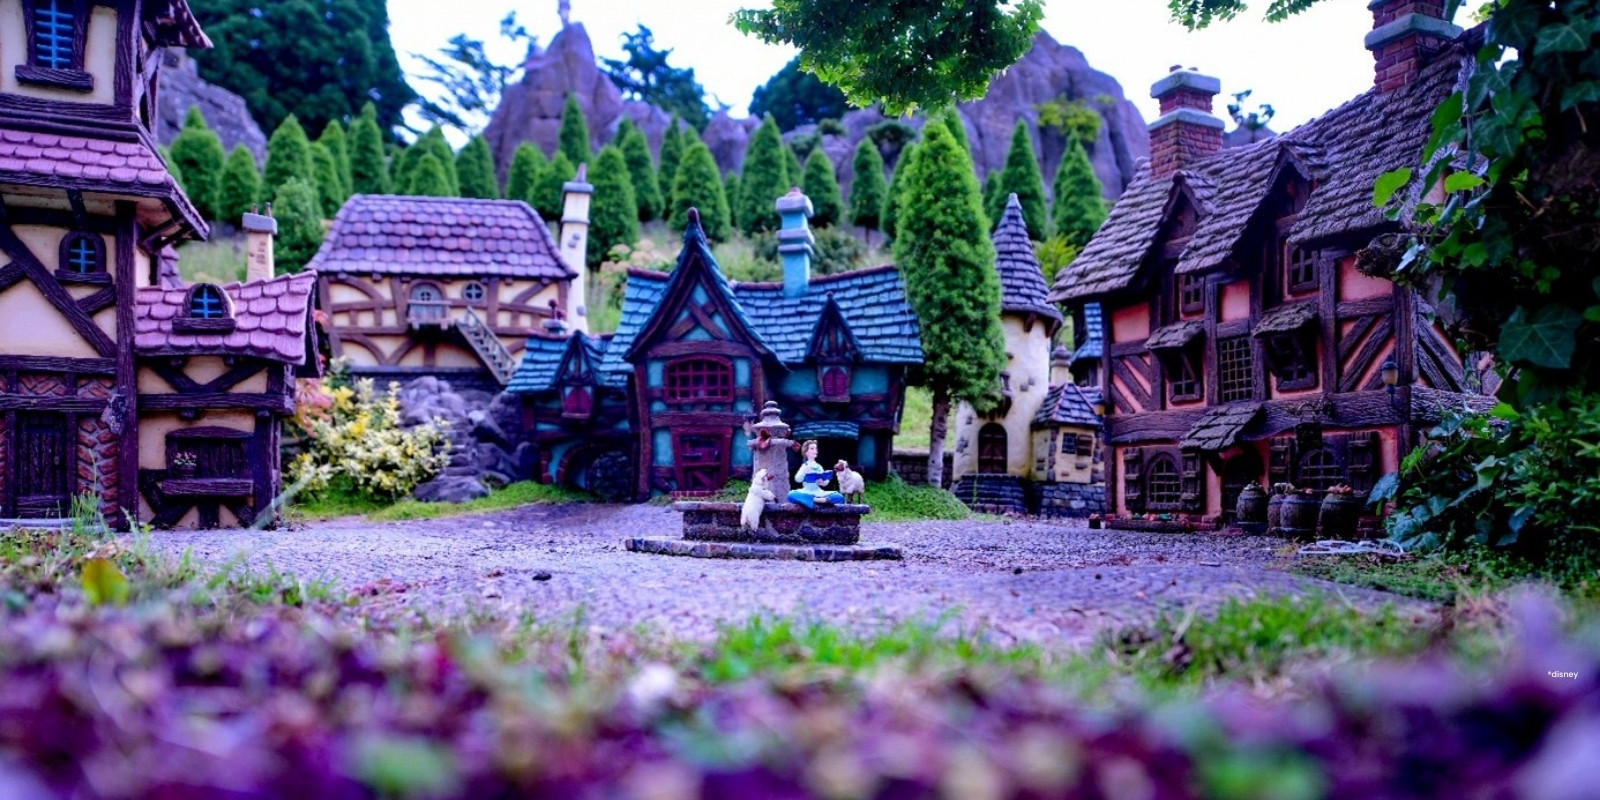 Miniatuur dorp met huizen en fontein